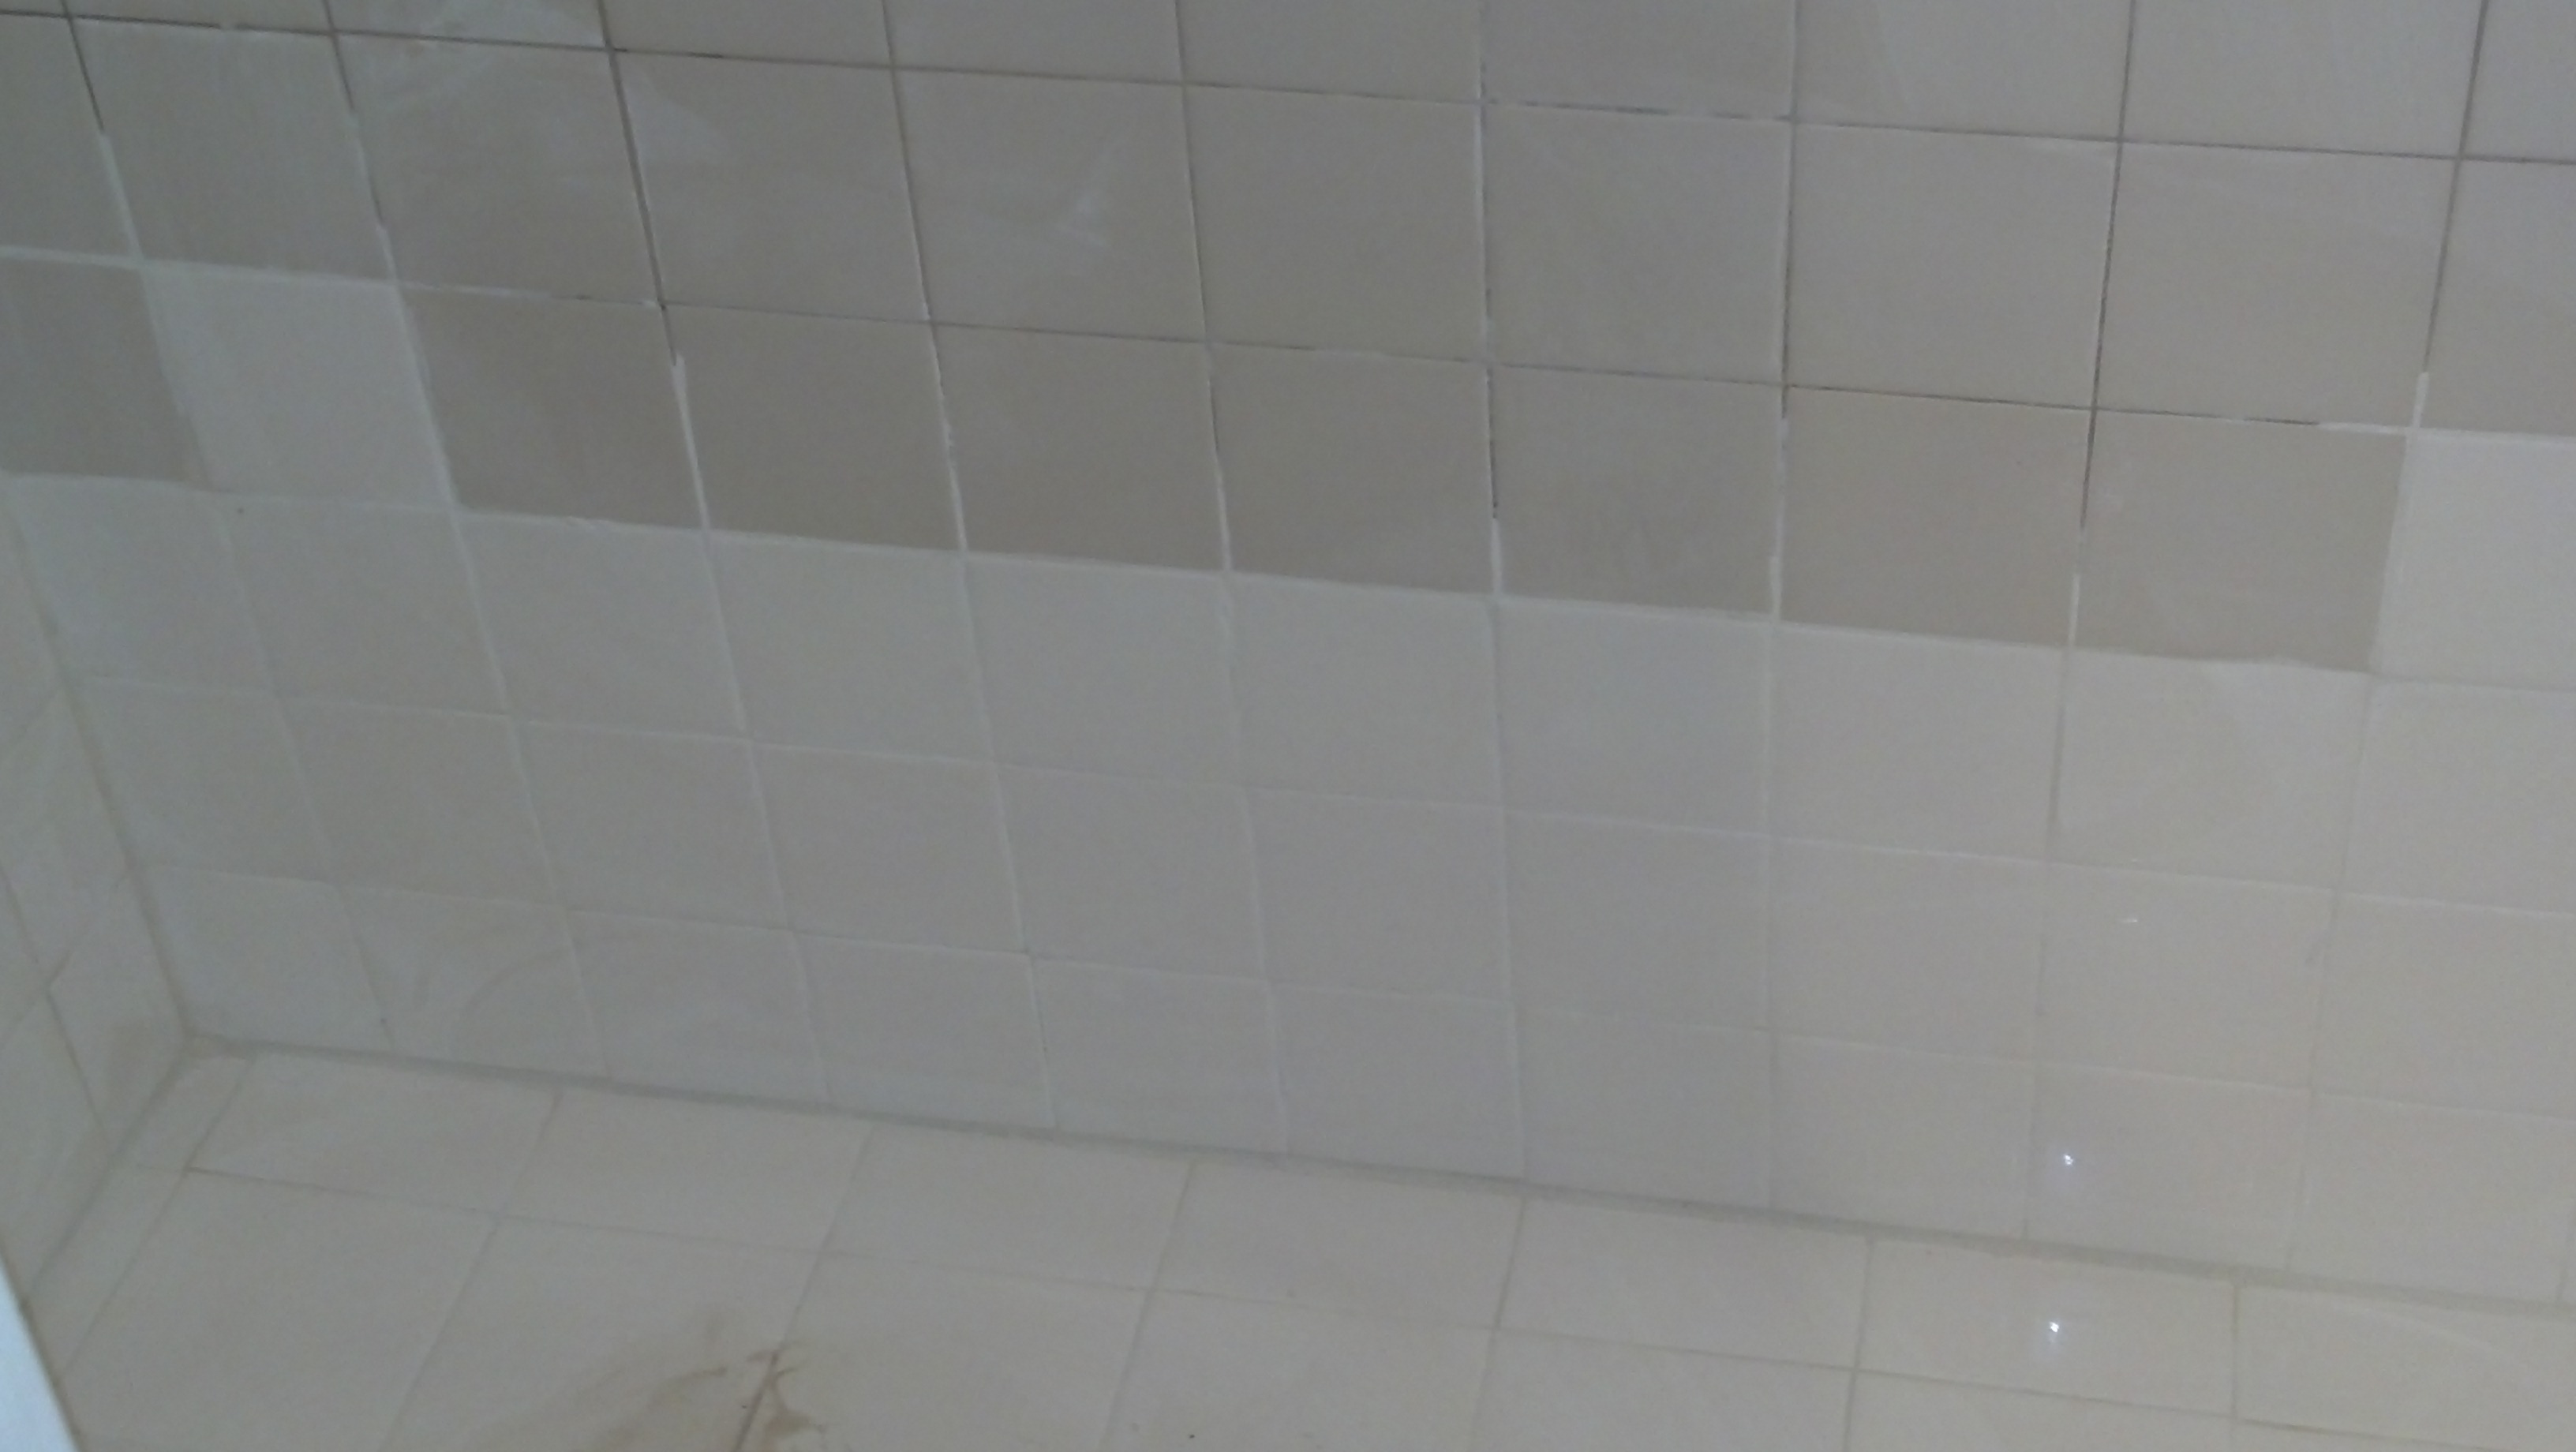 mismatch tile(mostly shower)